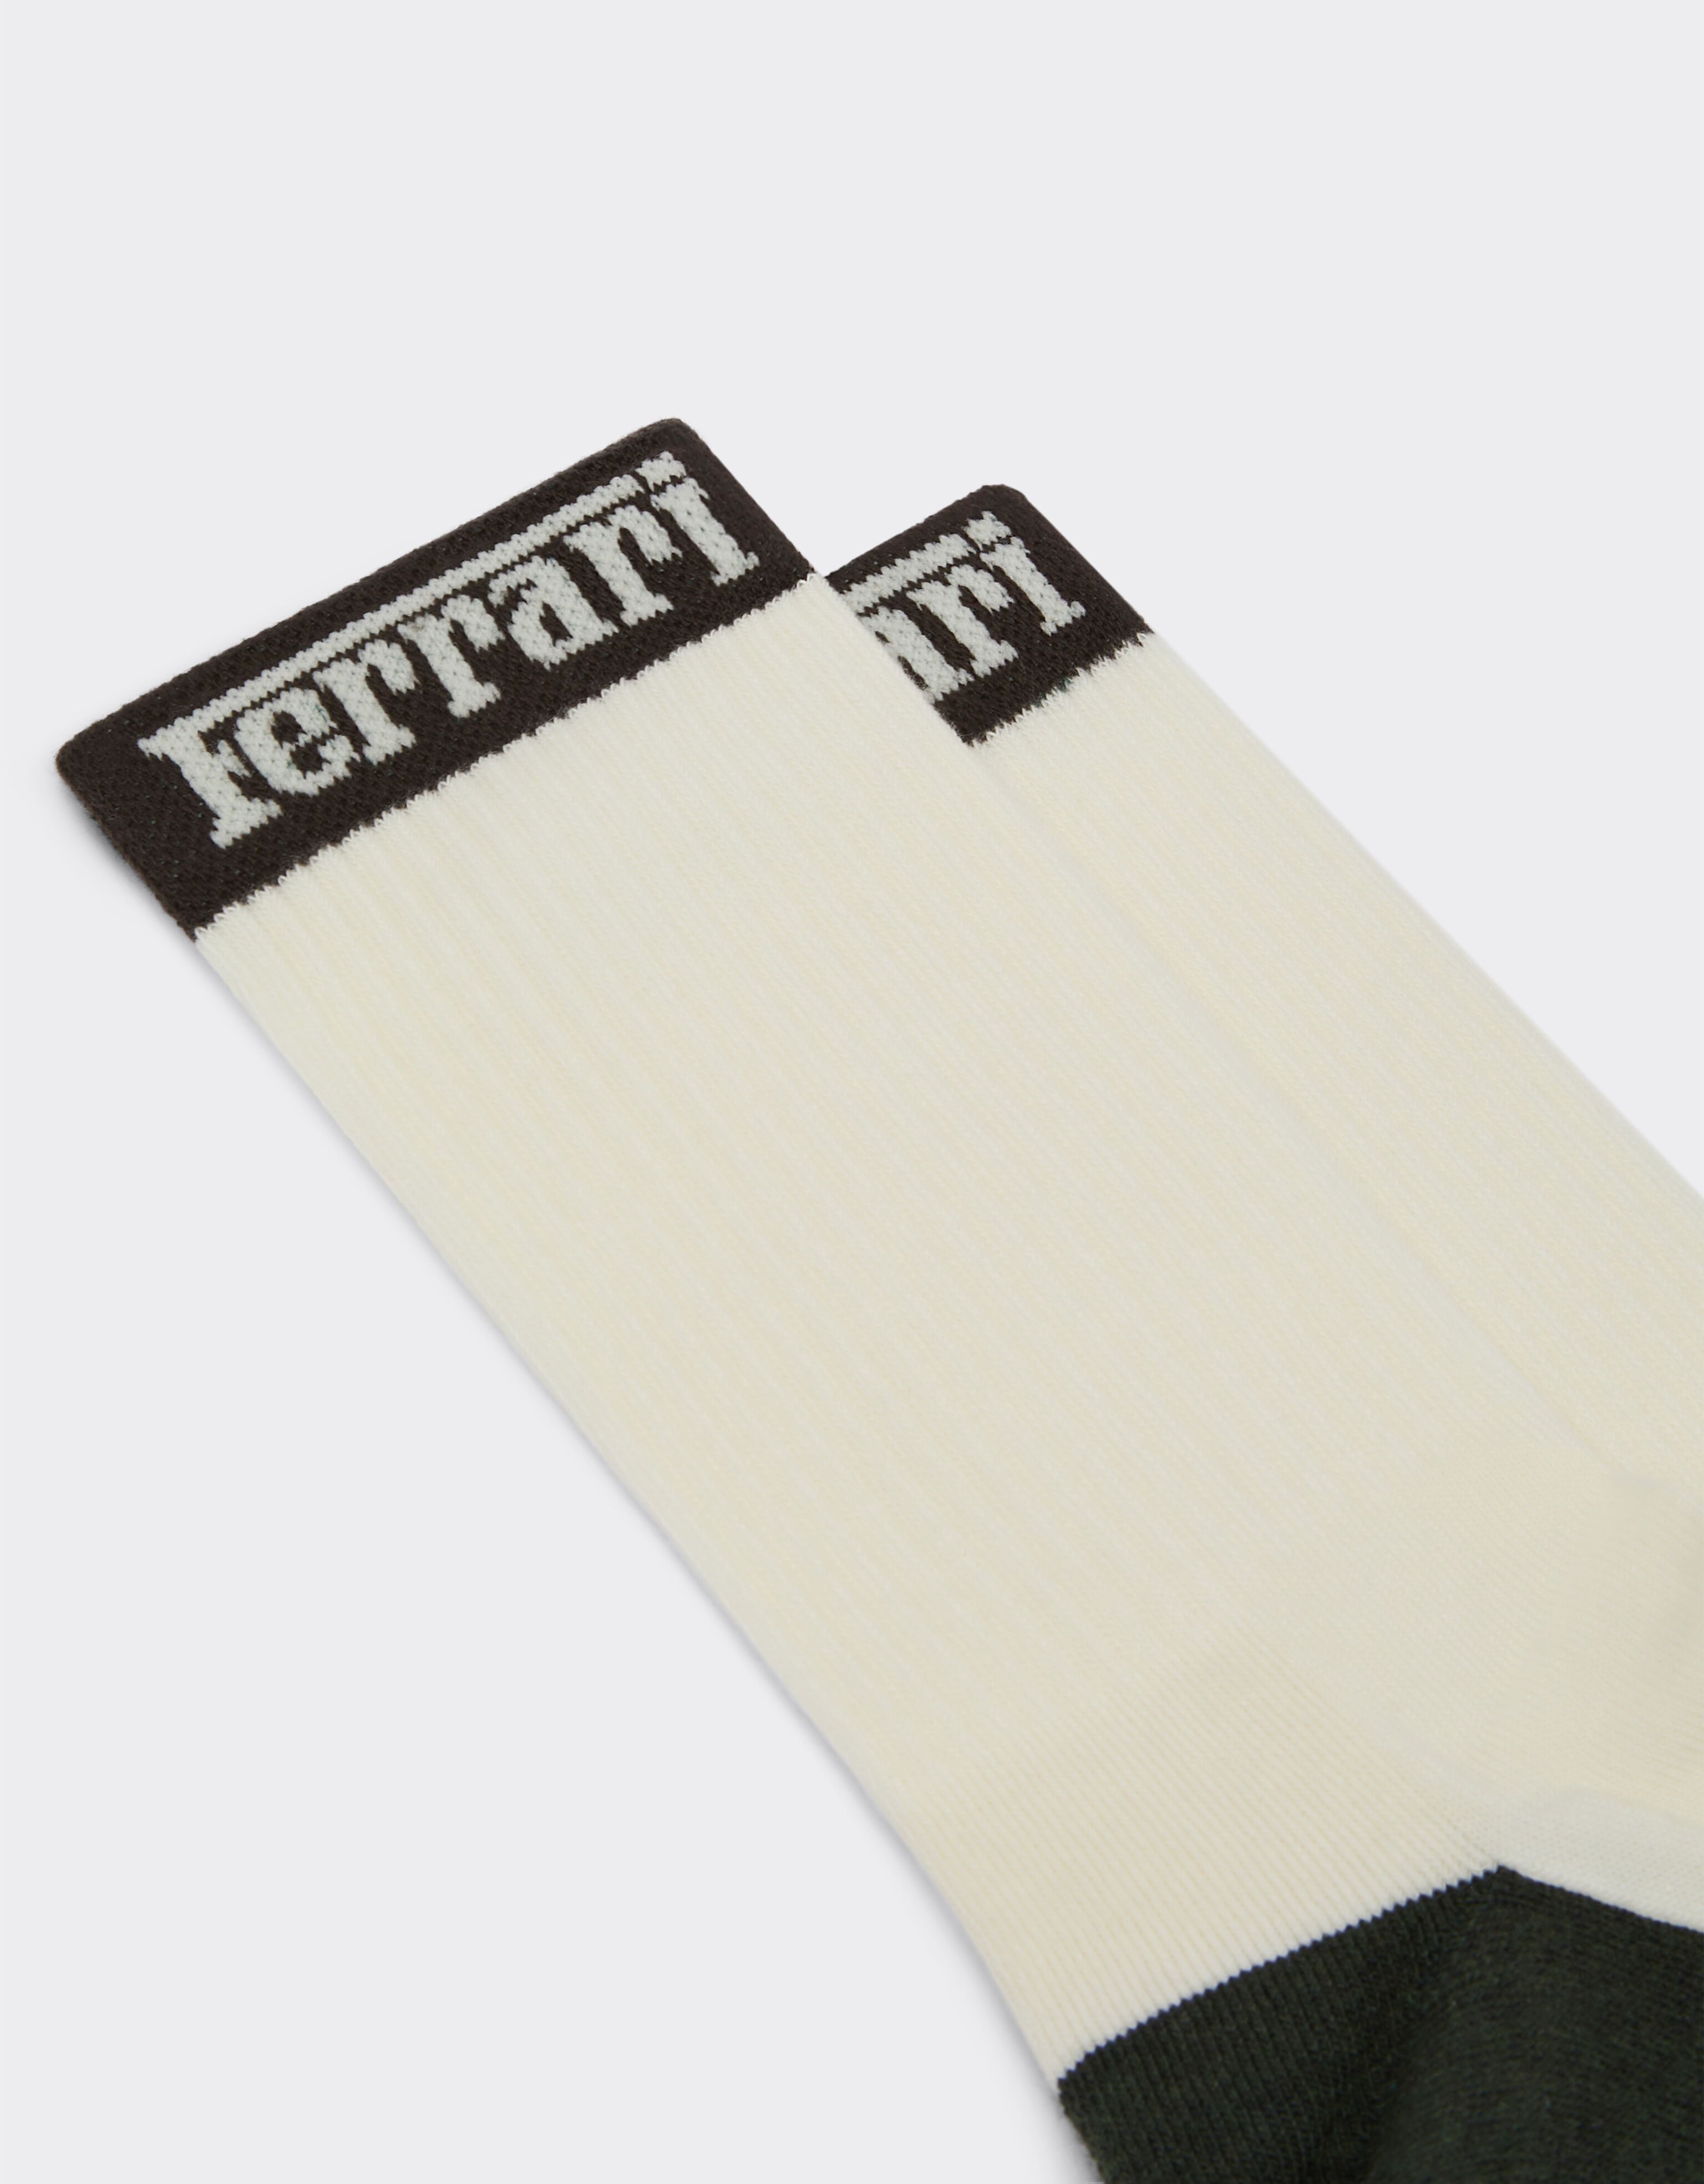 Ferrari Ferrari cotton terry socks Marfil 21354f